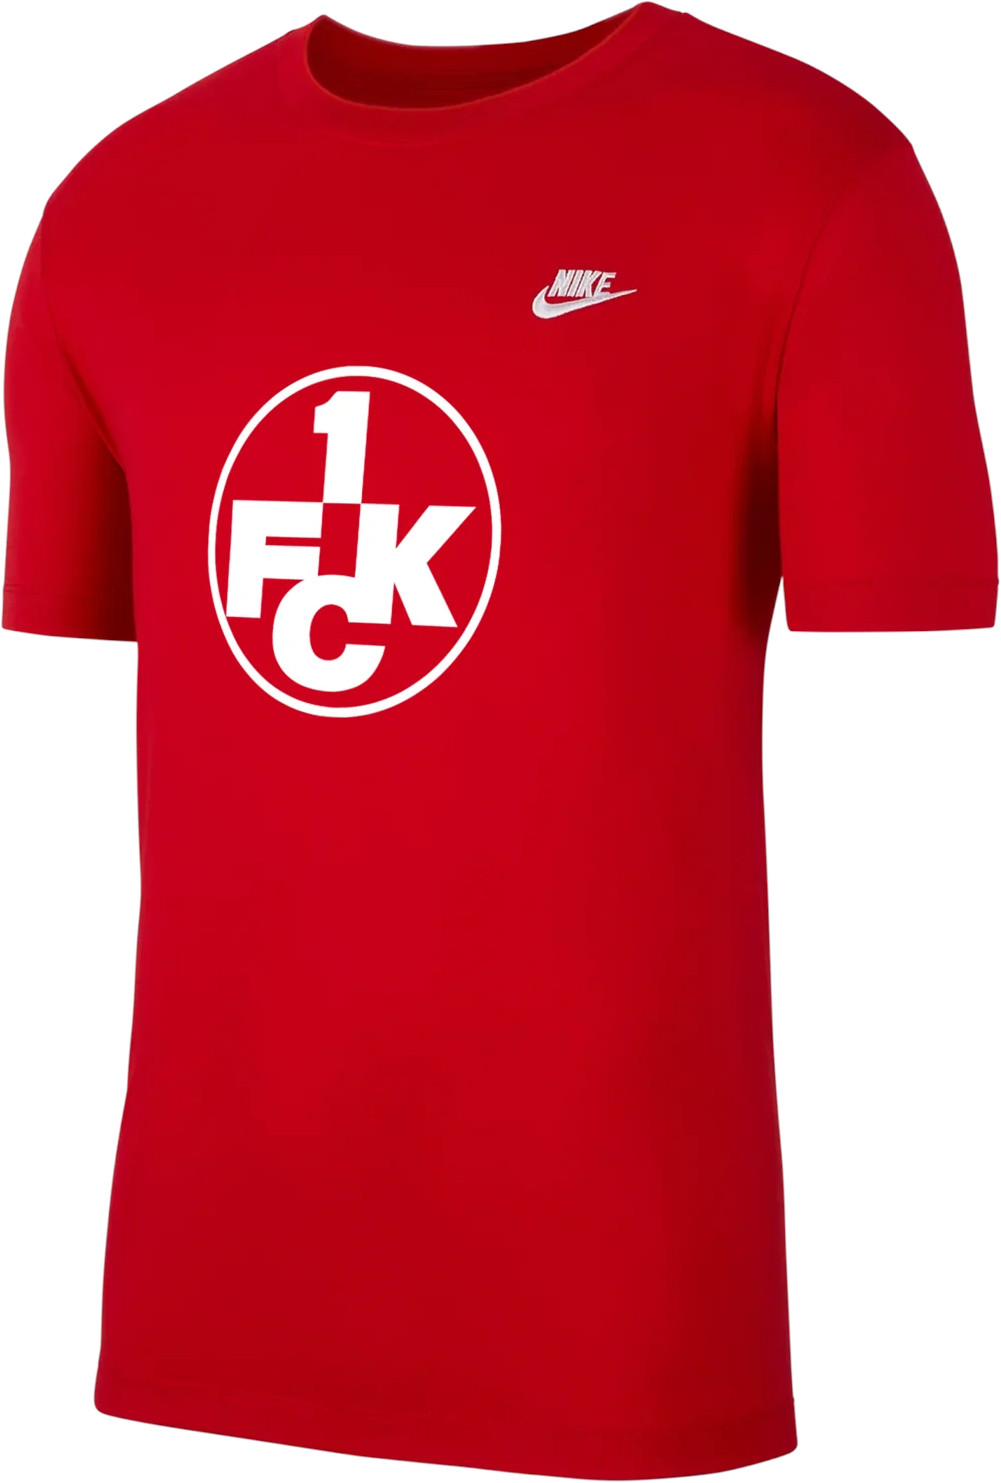 Tricou Nike 1.FC Kaiserslautern Club Tee